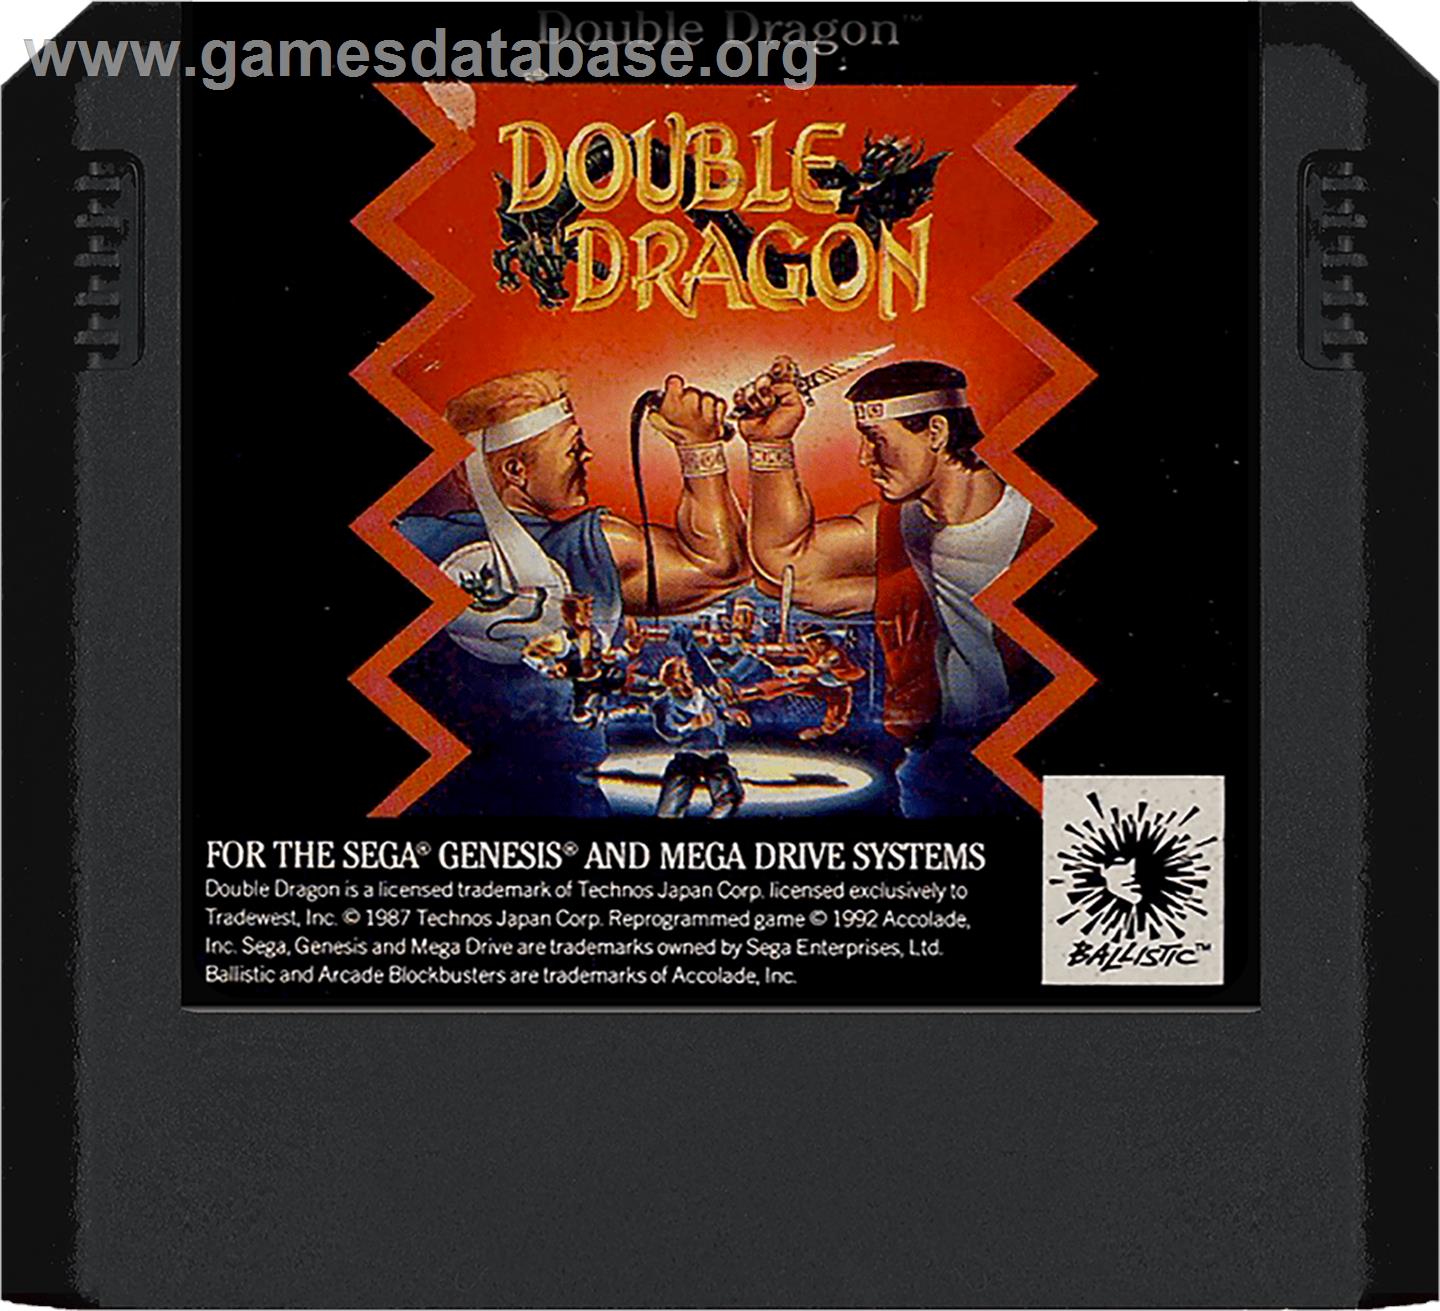 Double Dragon - Sega Genesis - Artwork - Cartridge